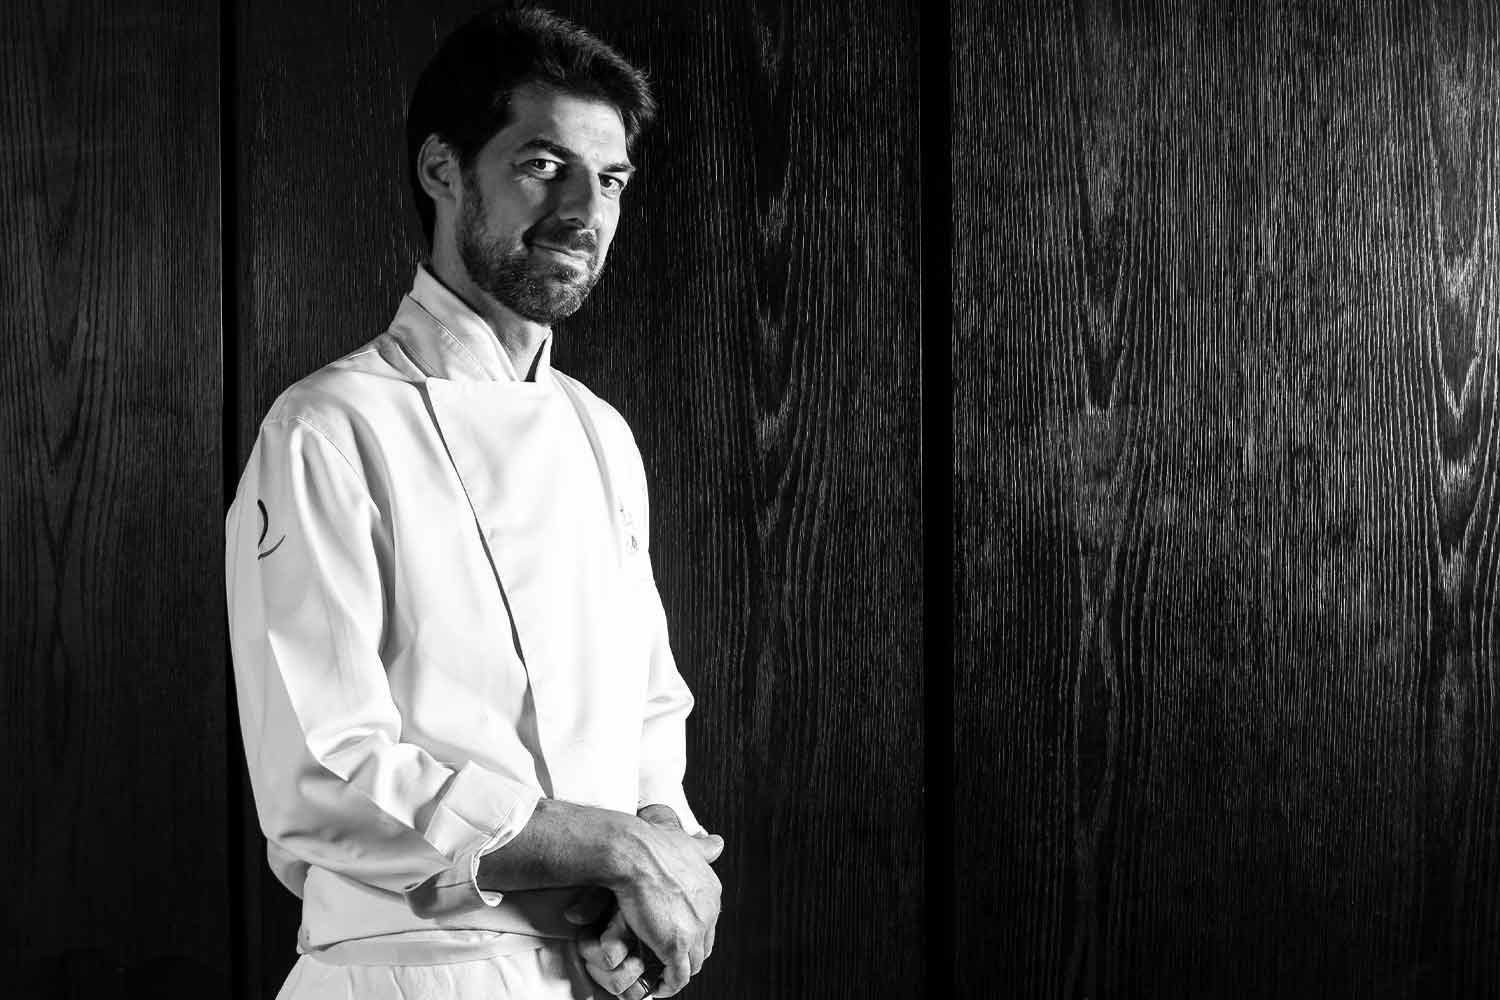 Massimiliano Alajmo, chef del ristorante Le calandre, Rubano (PD)